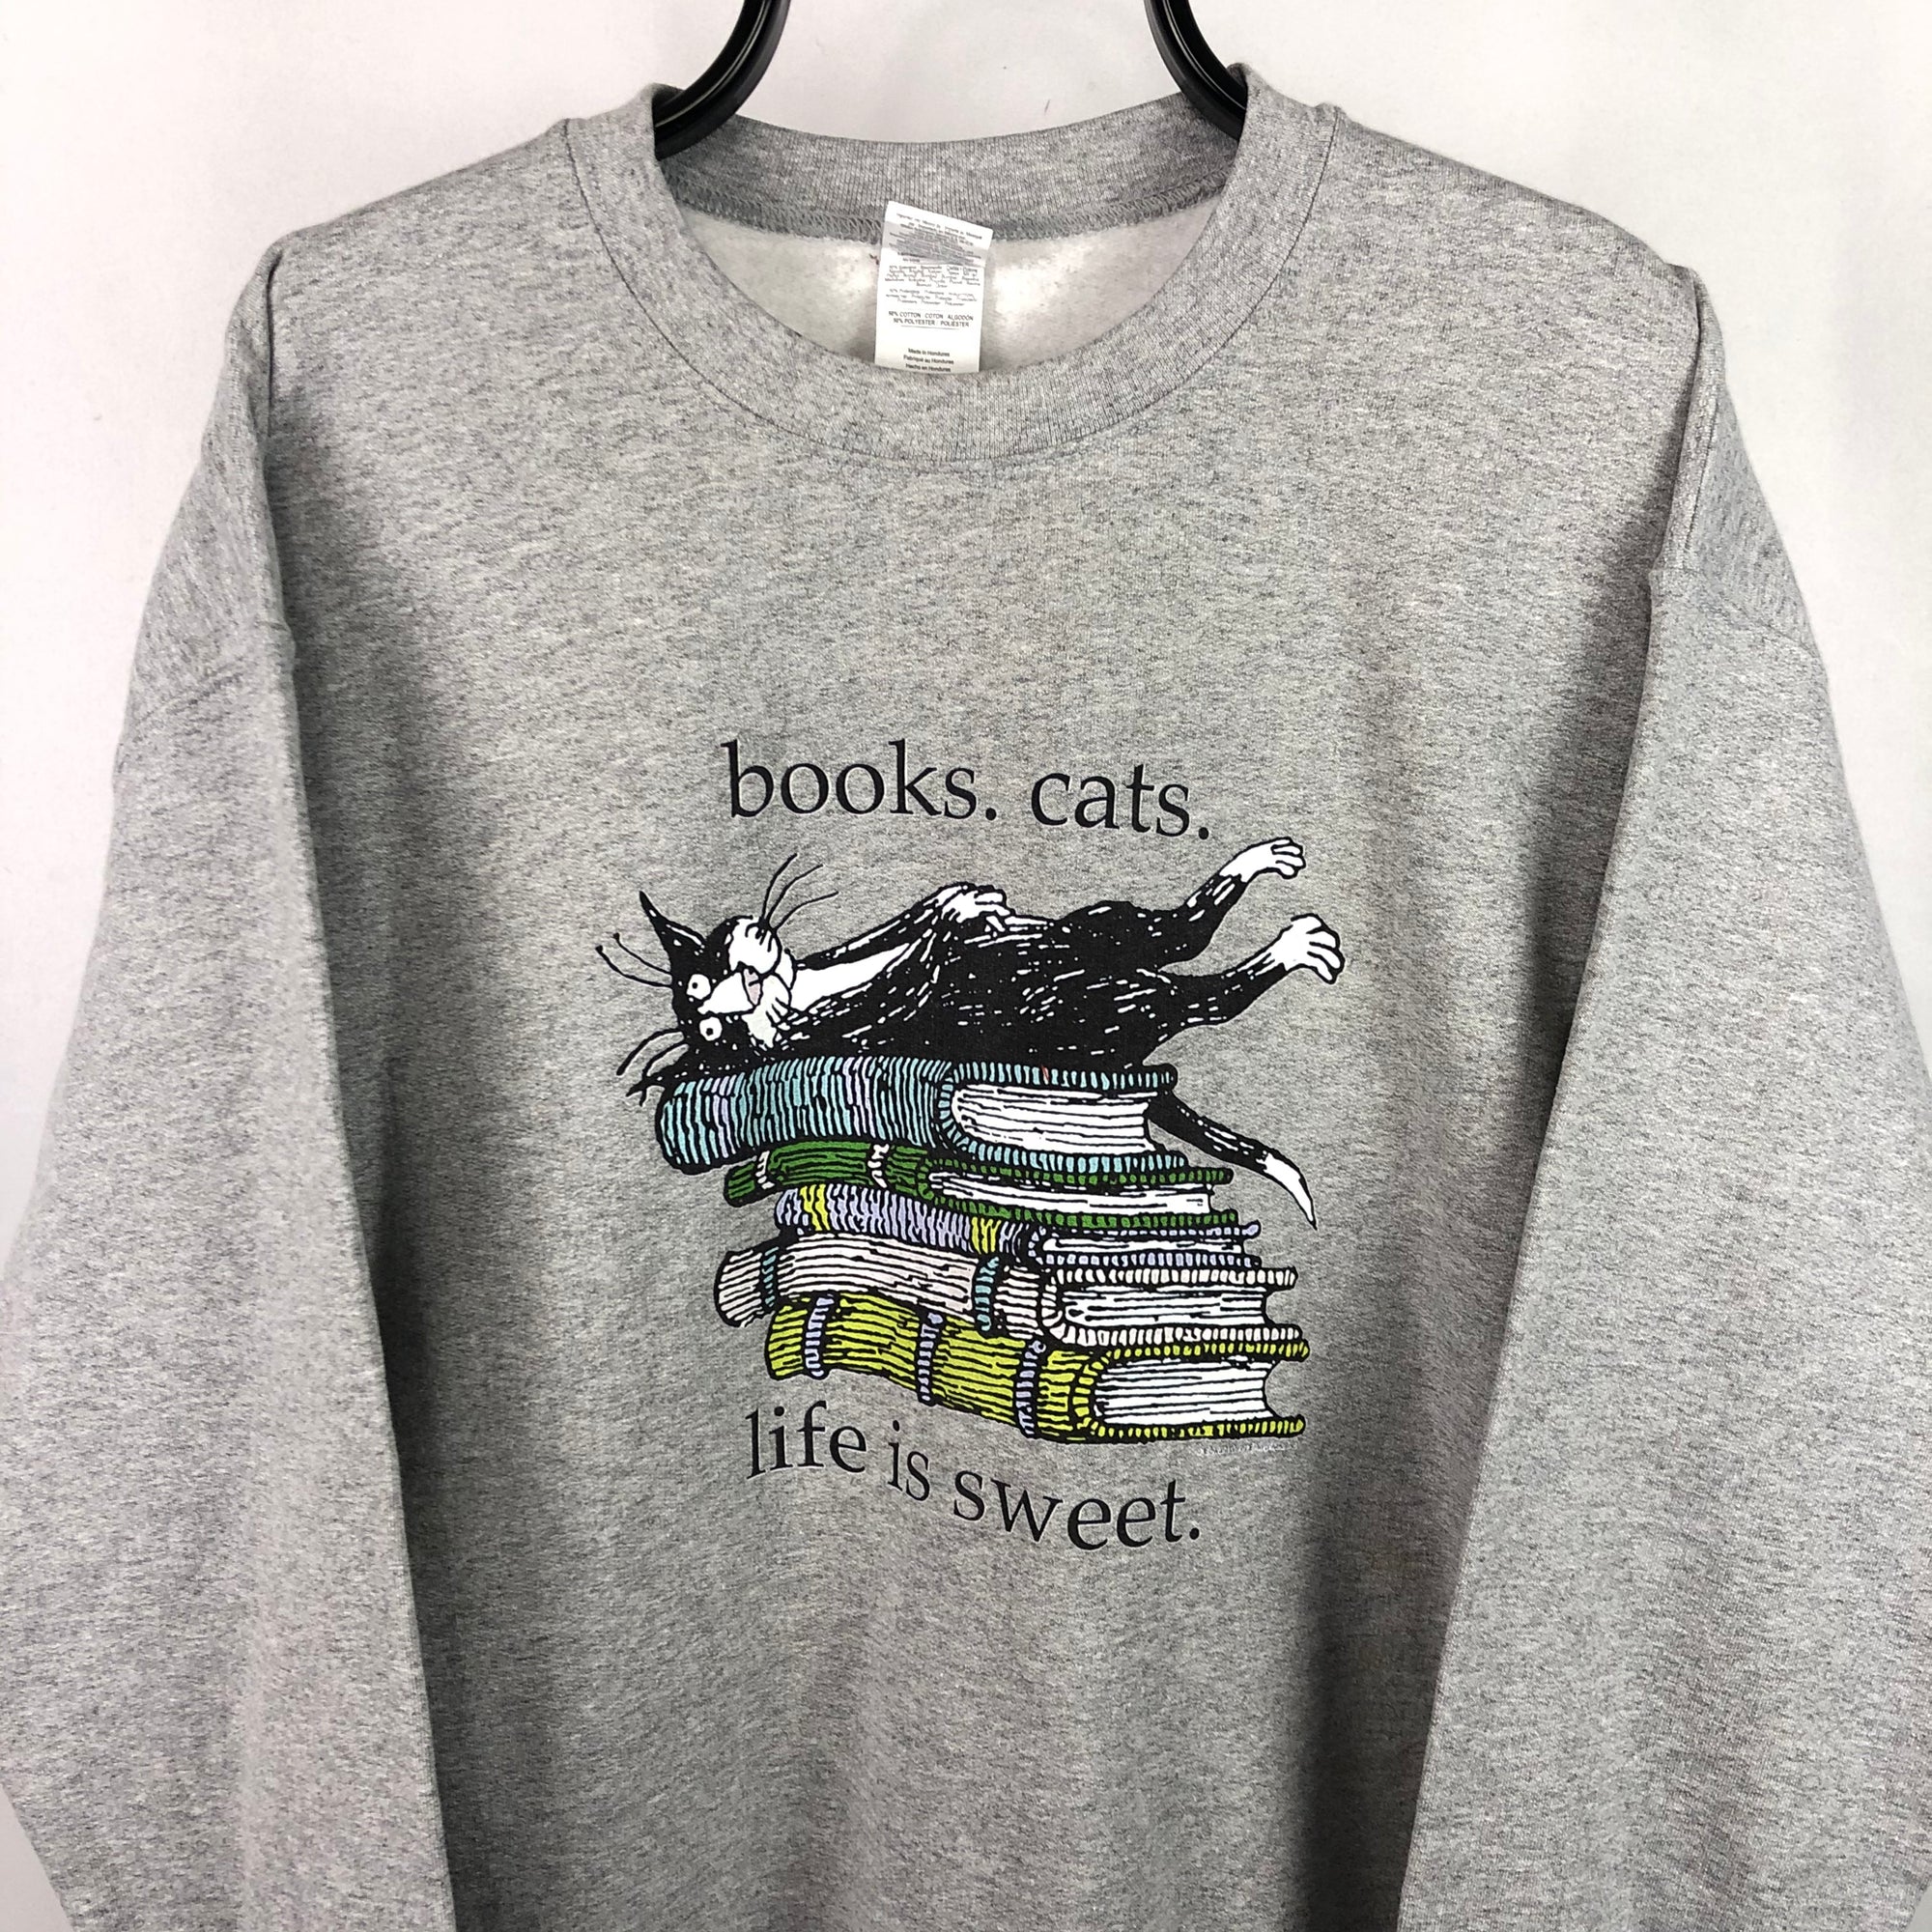 Vintage Books & Cats Sweatshirt in Grey - Men's Medium/Women's Large